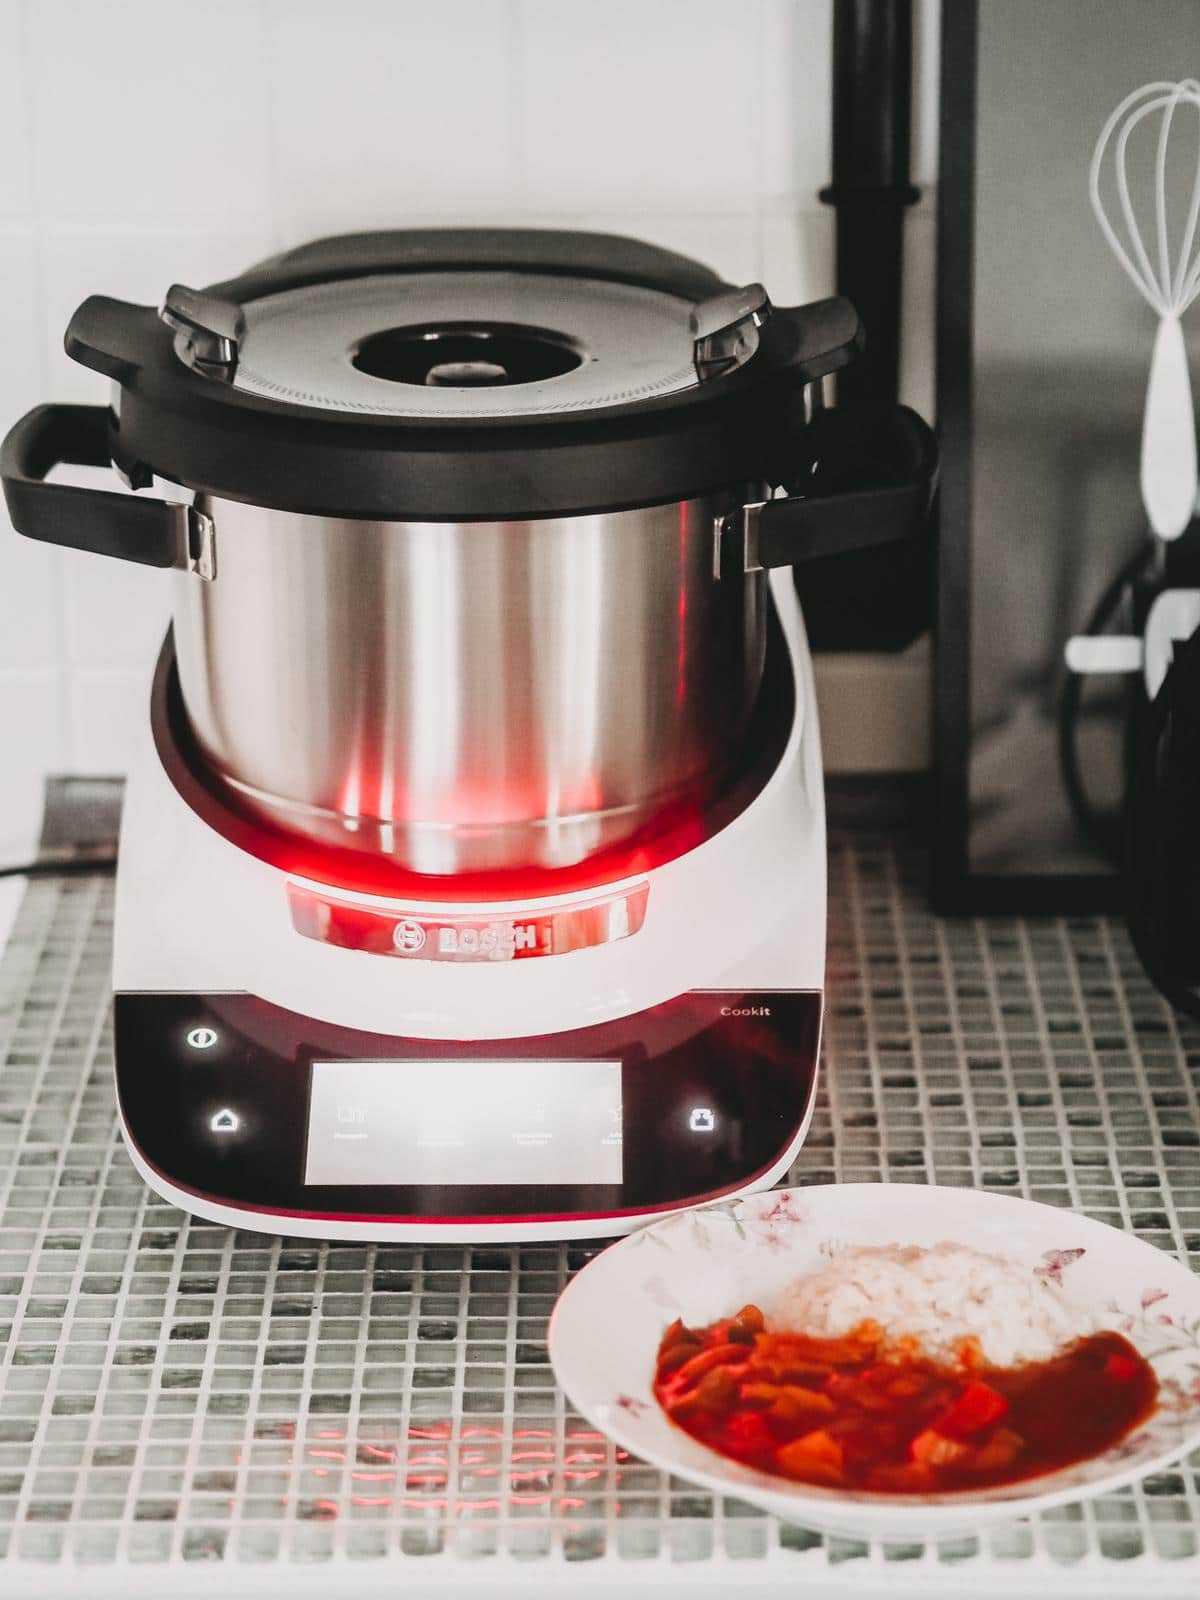 Tolle Küchenmaschine Cookit von Bosch